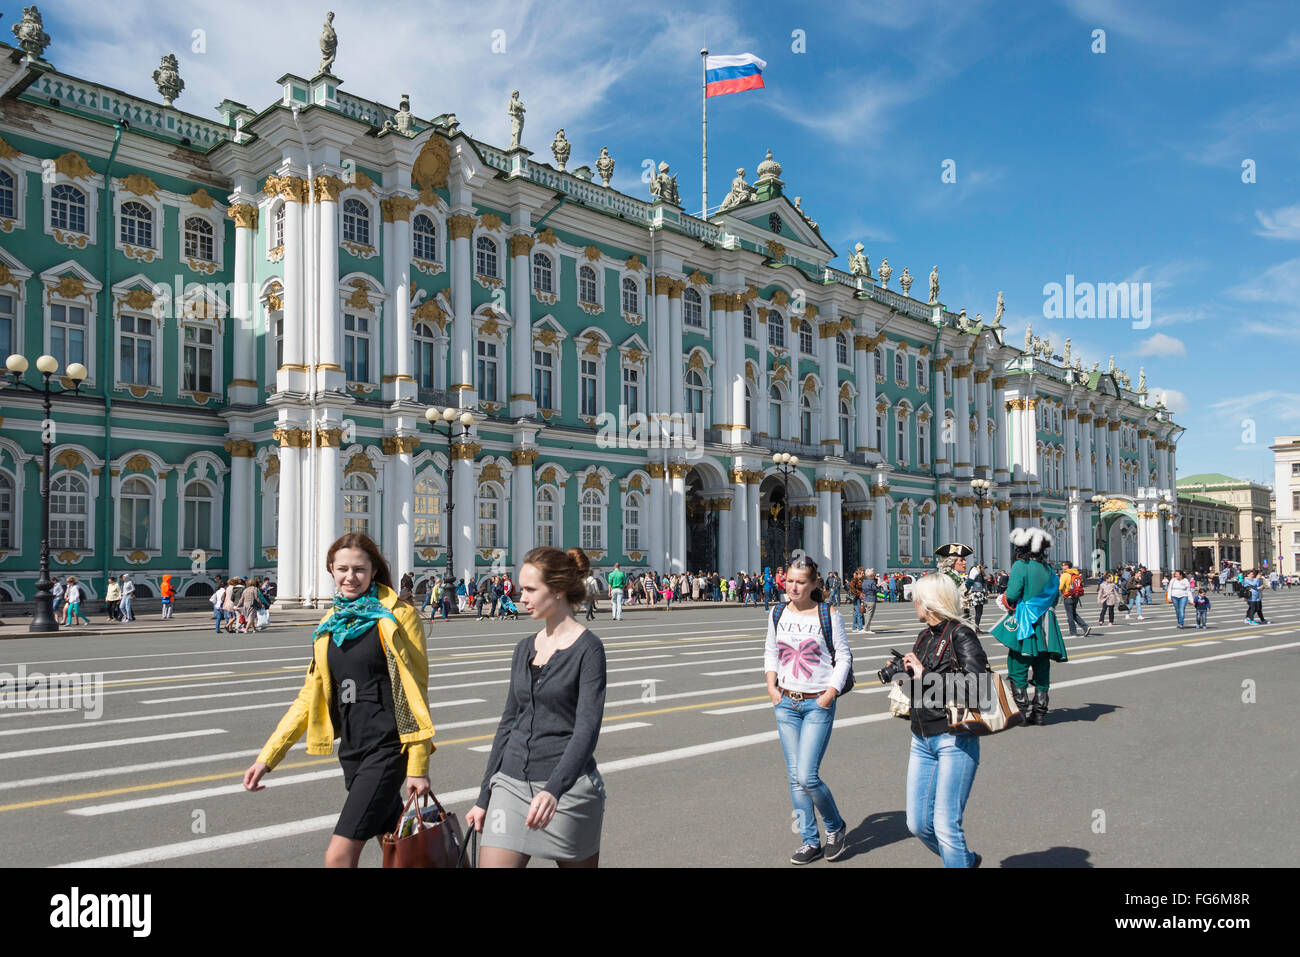 Xviii secolo stato Hermitage Museum, la Piazza del Palazzo San Pietroburgo, regione nord-occidentale, Federazione russa Foto Stock